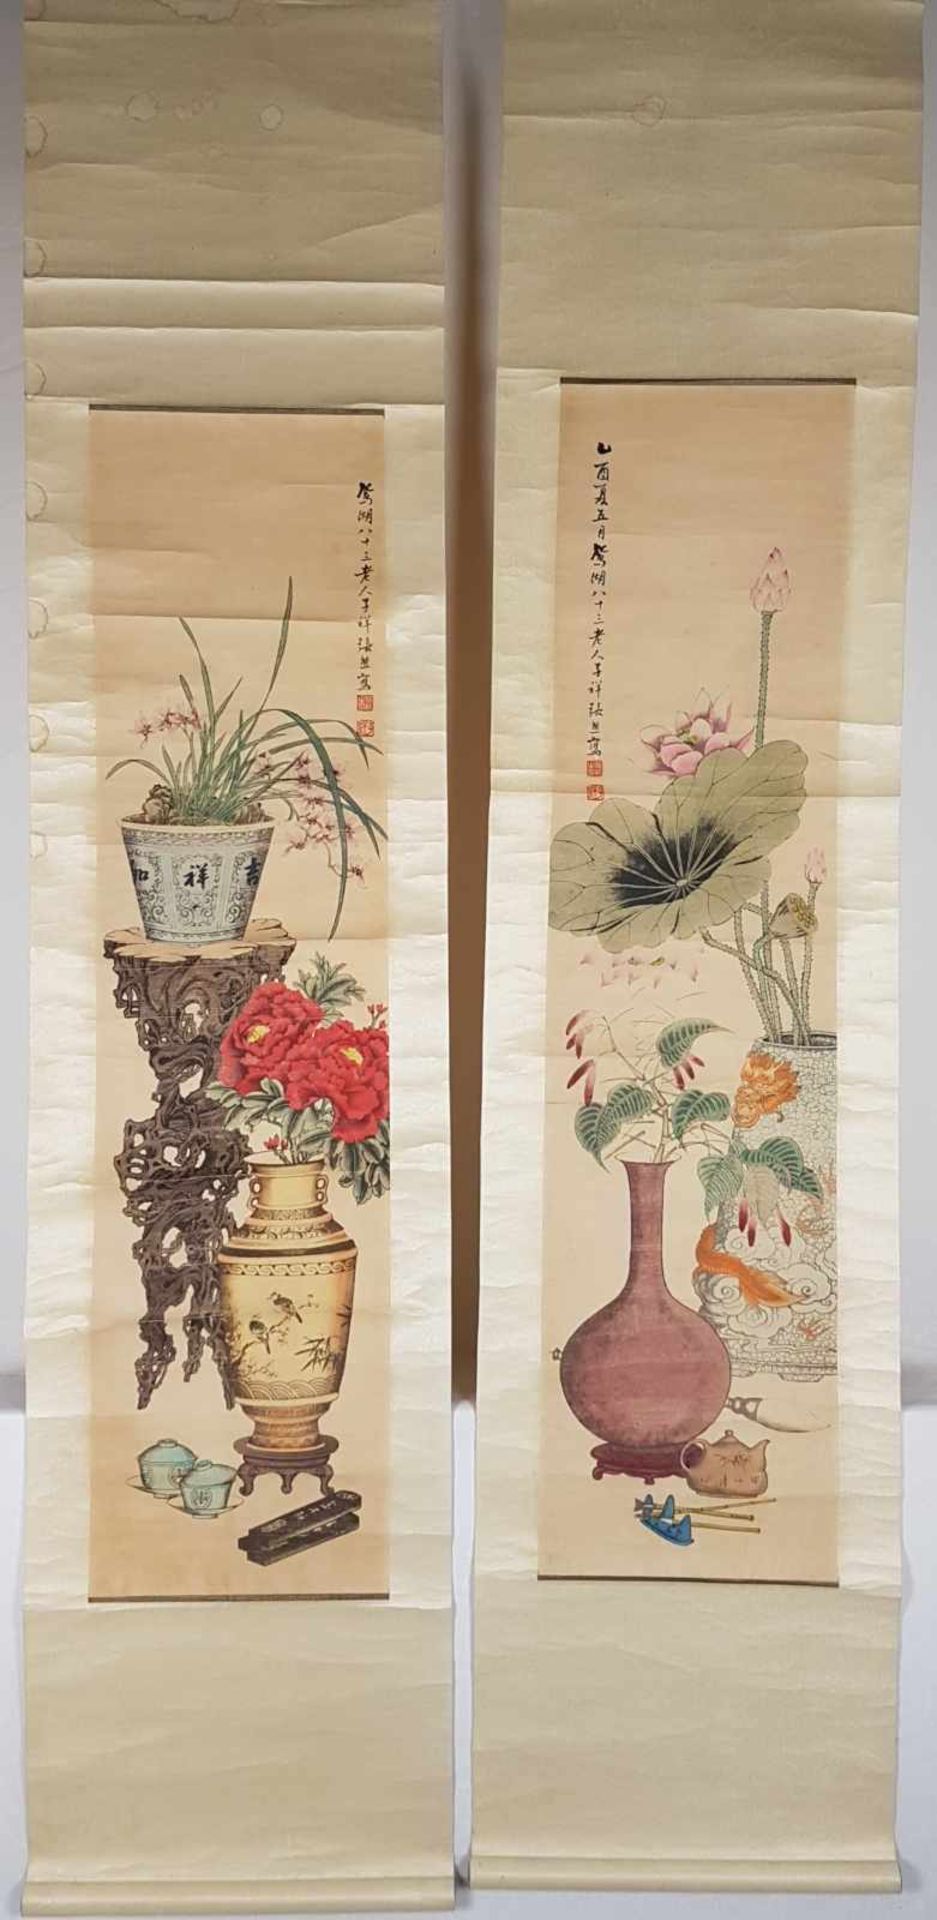 Zwei Rollbilder - China um 1900,Gelehrtenuntersilien: 2 Vasen,1 blühende Lotuspflanze,